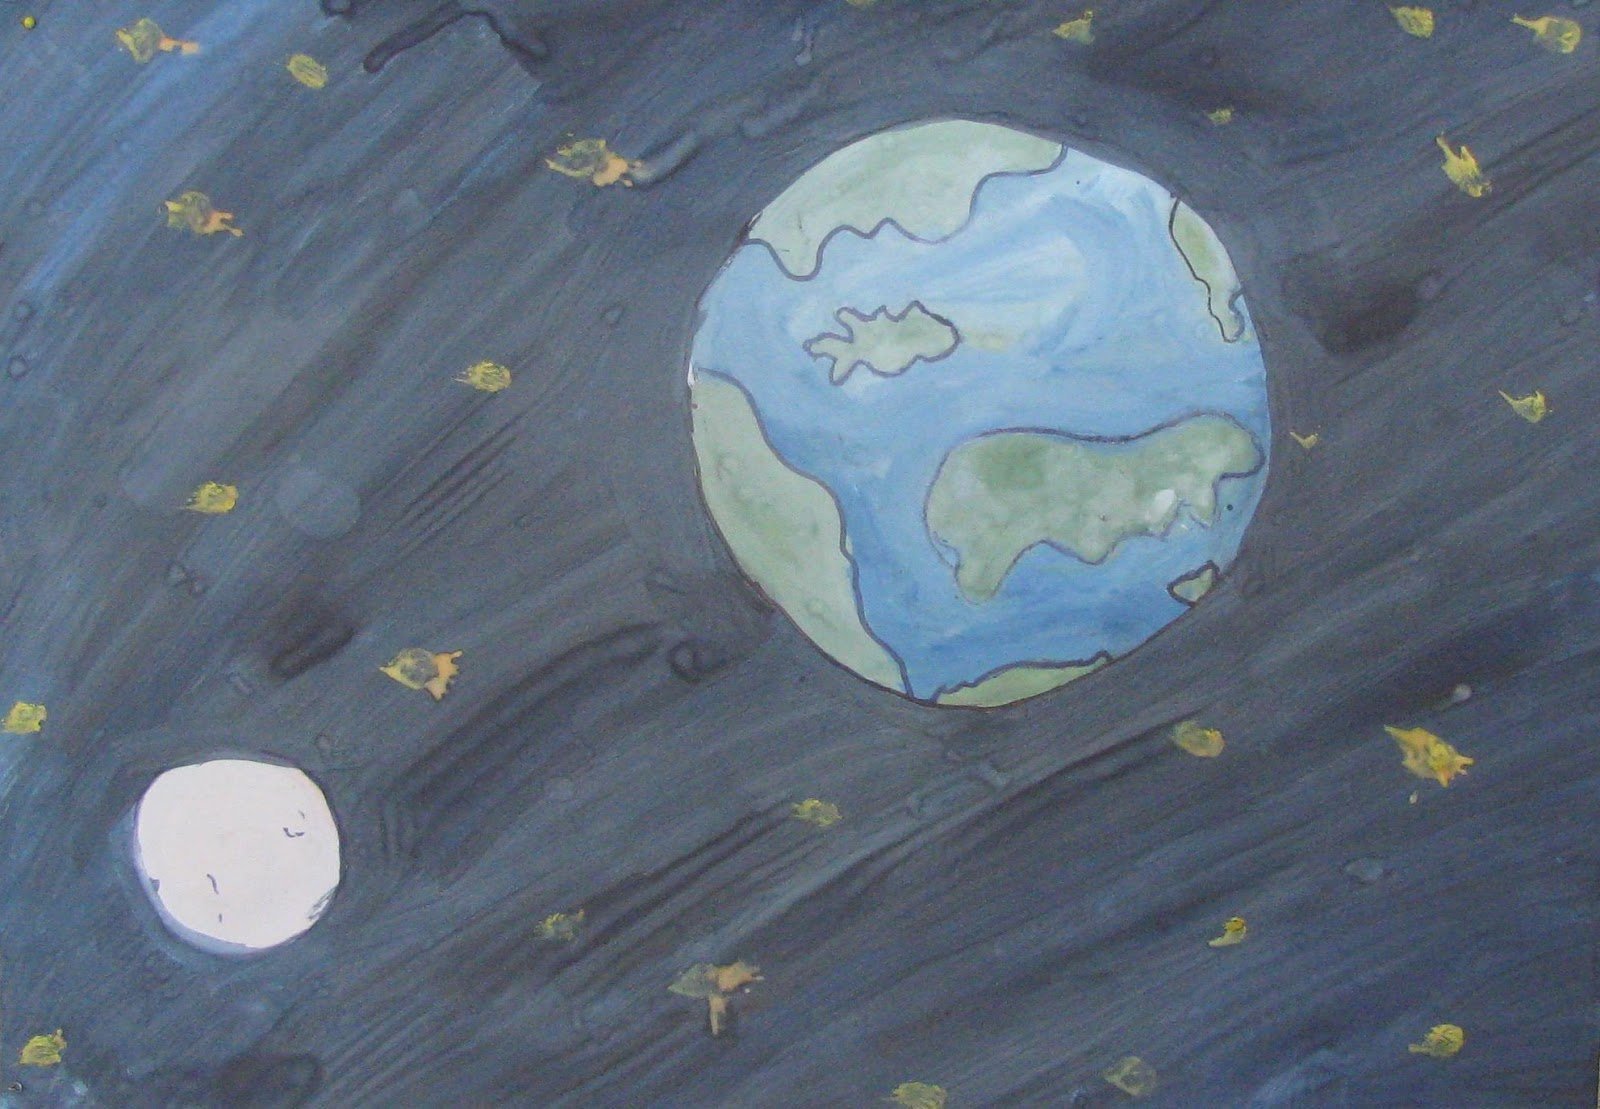 Просторы космоса рисунки для детей